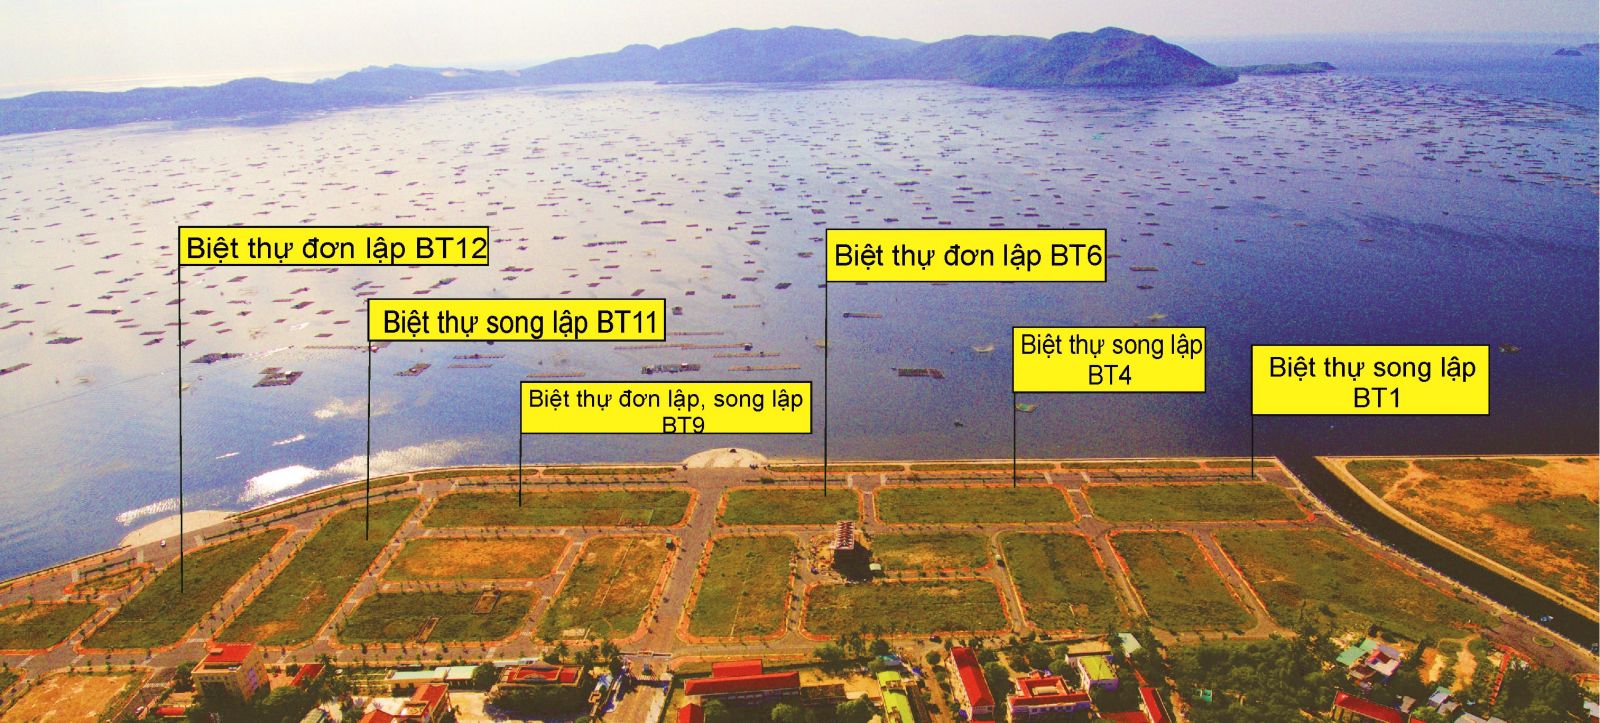 Việt Long Phú Yên đang mở bán 15 nền biệt thự hướng biển, giá từ 20 triệu/m2